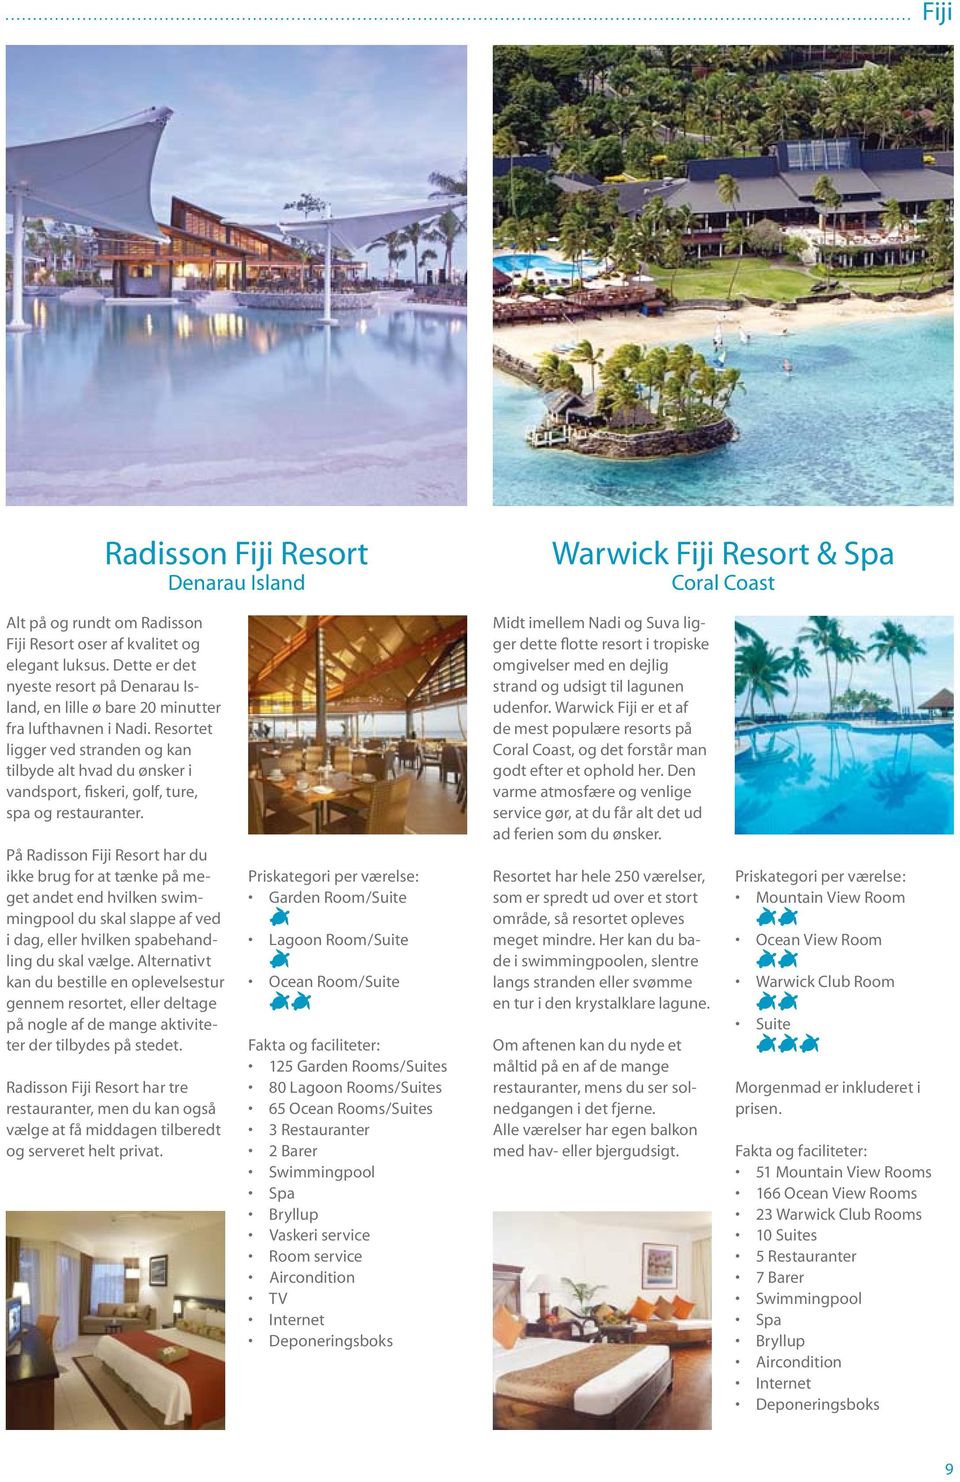 Resortet ligger ved stranden og kan tilbyde alt hvad du ønsker i vandsport, fiskeri, golf, ture, spa og restauranter.